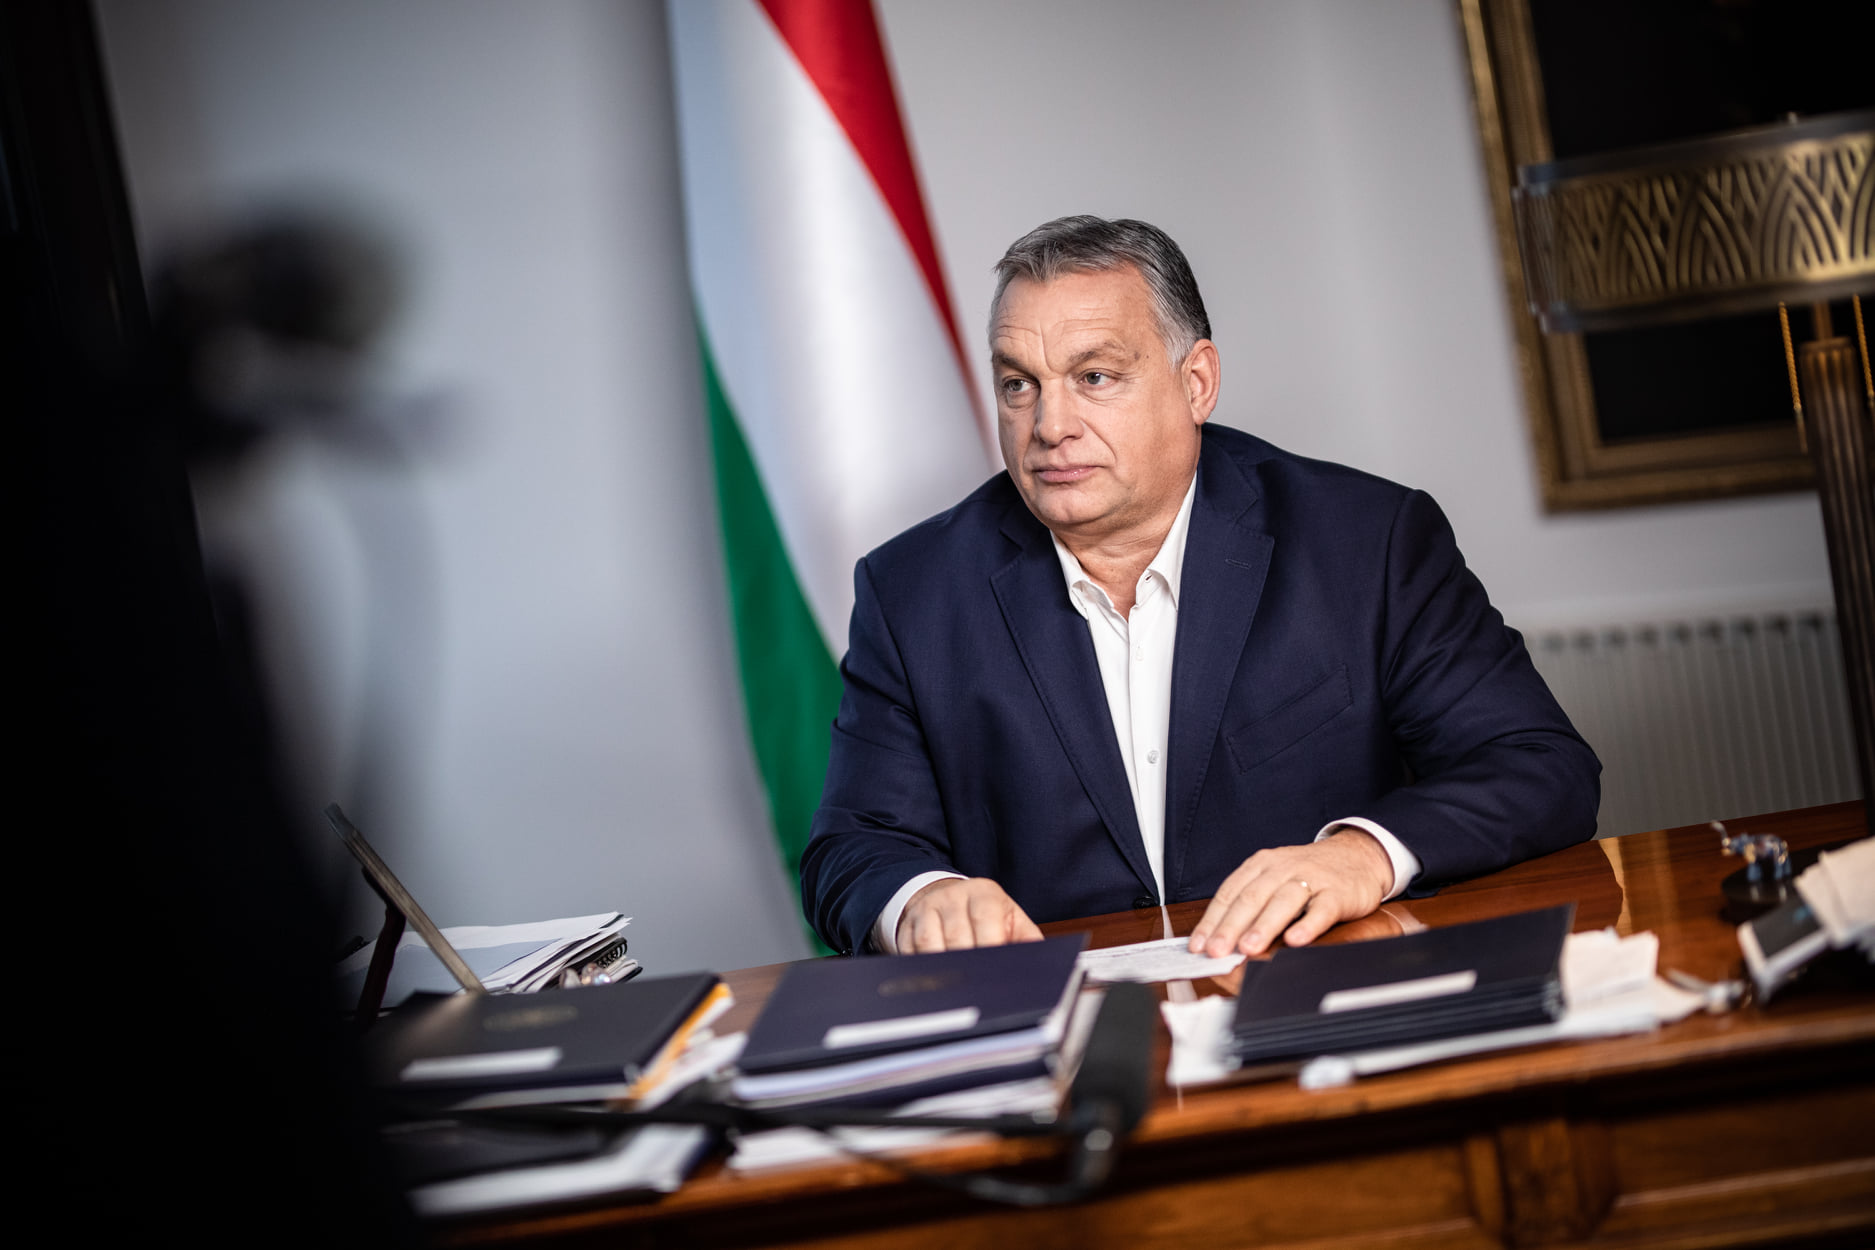 Újabb gazdaságvédelmi intézkedéseket jelentett be Orbán Viktor